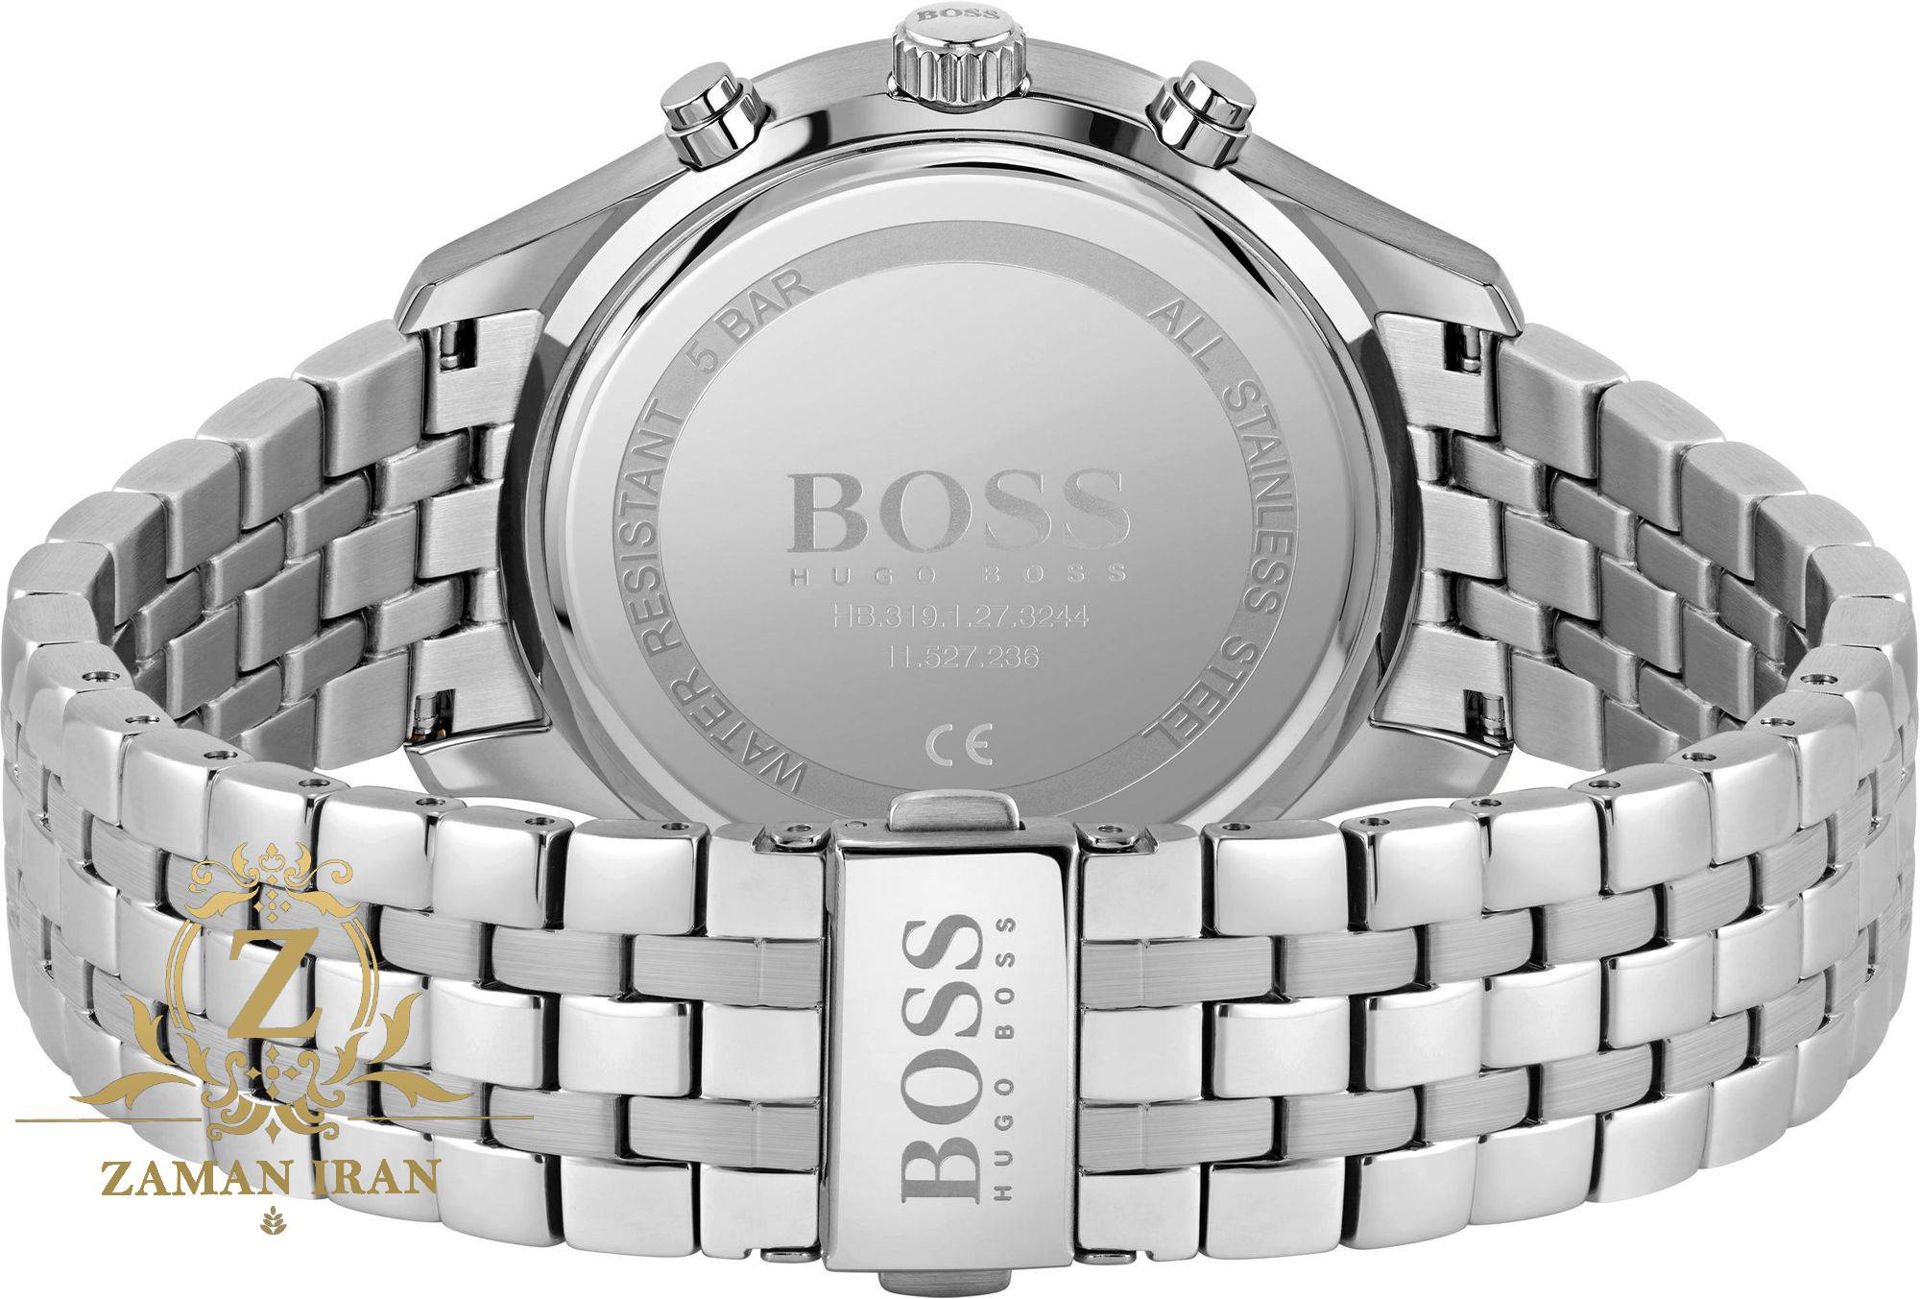 ساعت مچی مردانه هوگو بوس Hugo Boss اورجینال مدل 1513869